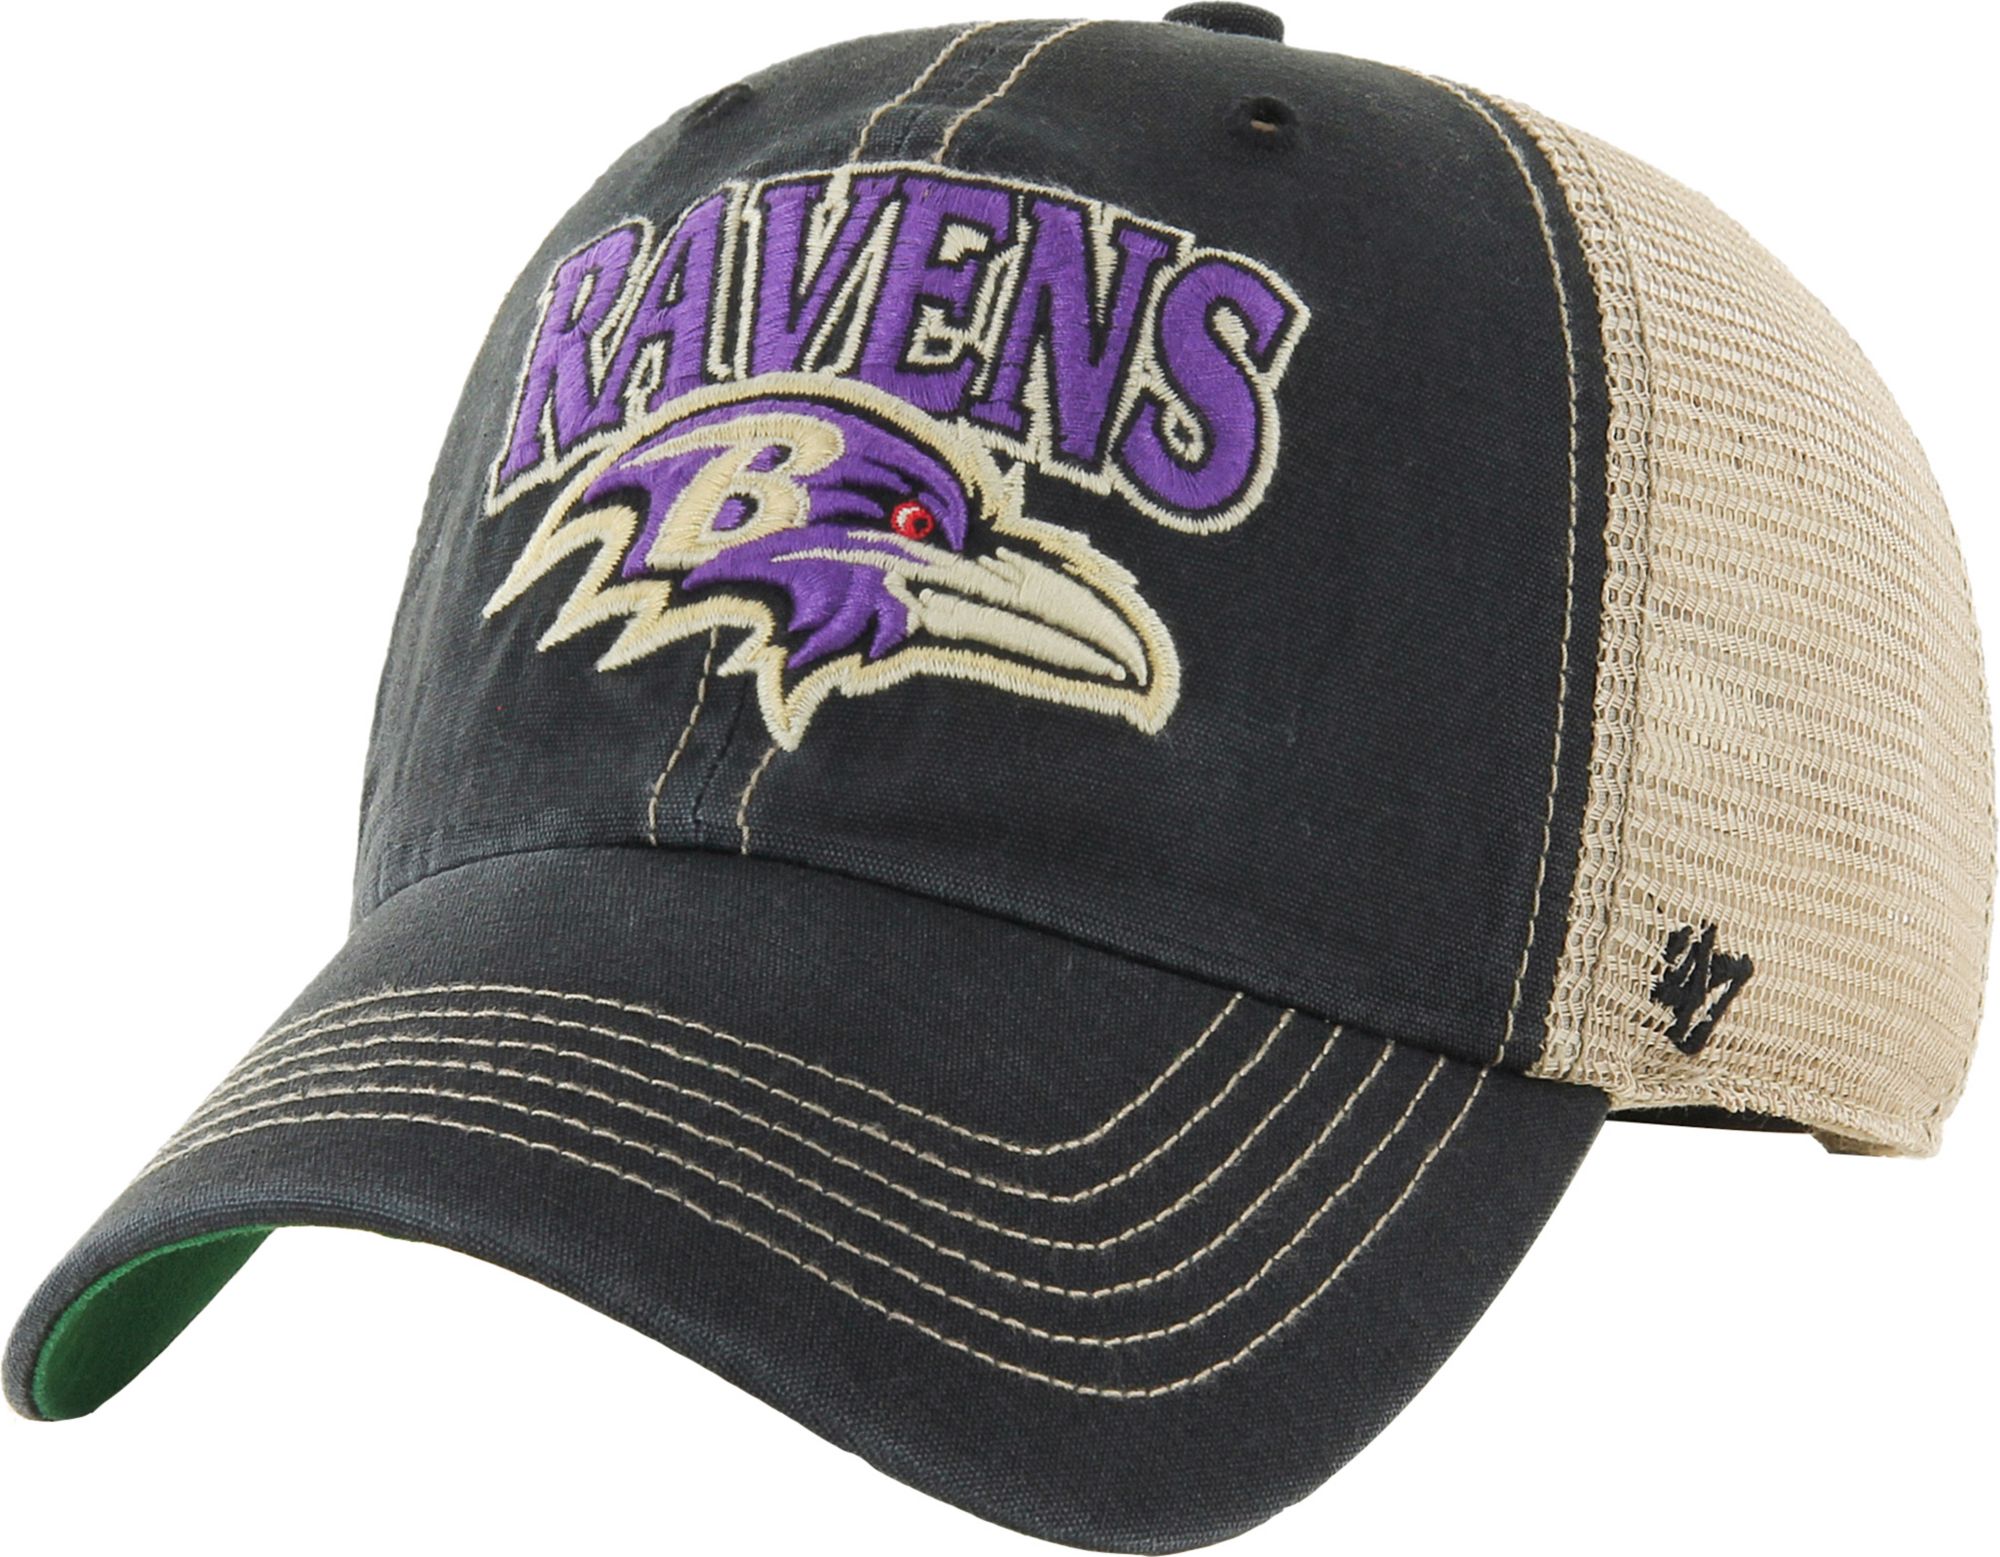 vintage ravens hat